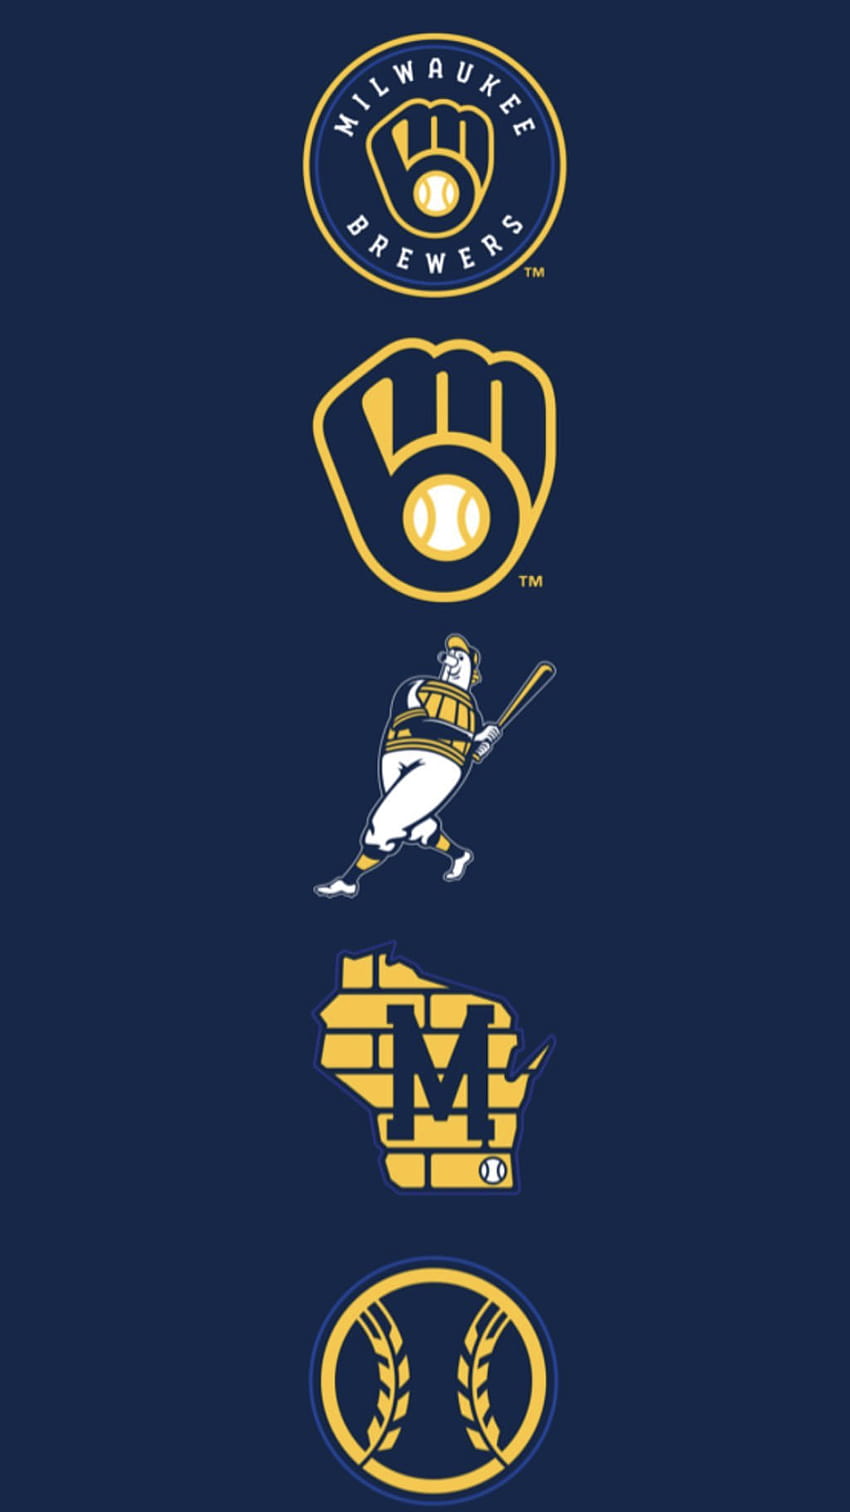 Membawa kembali logo terhebat dalam sejarah bisbol untuk tahun 2020! pada tahun 2020, logo pembuat bir retro wallpaper ponsel HD